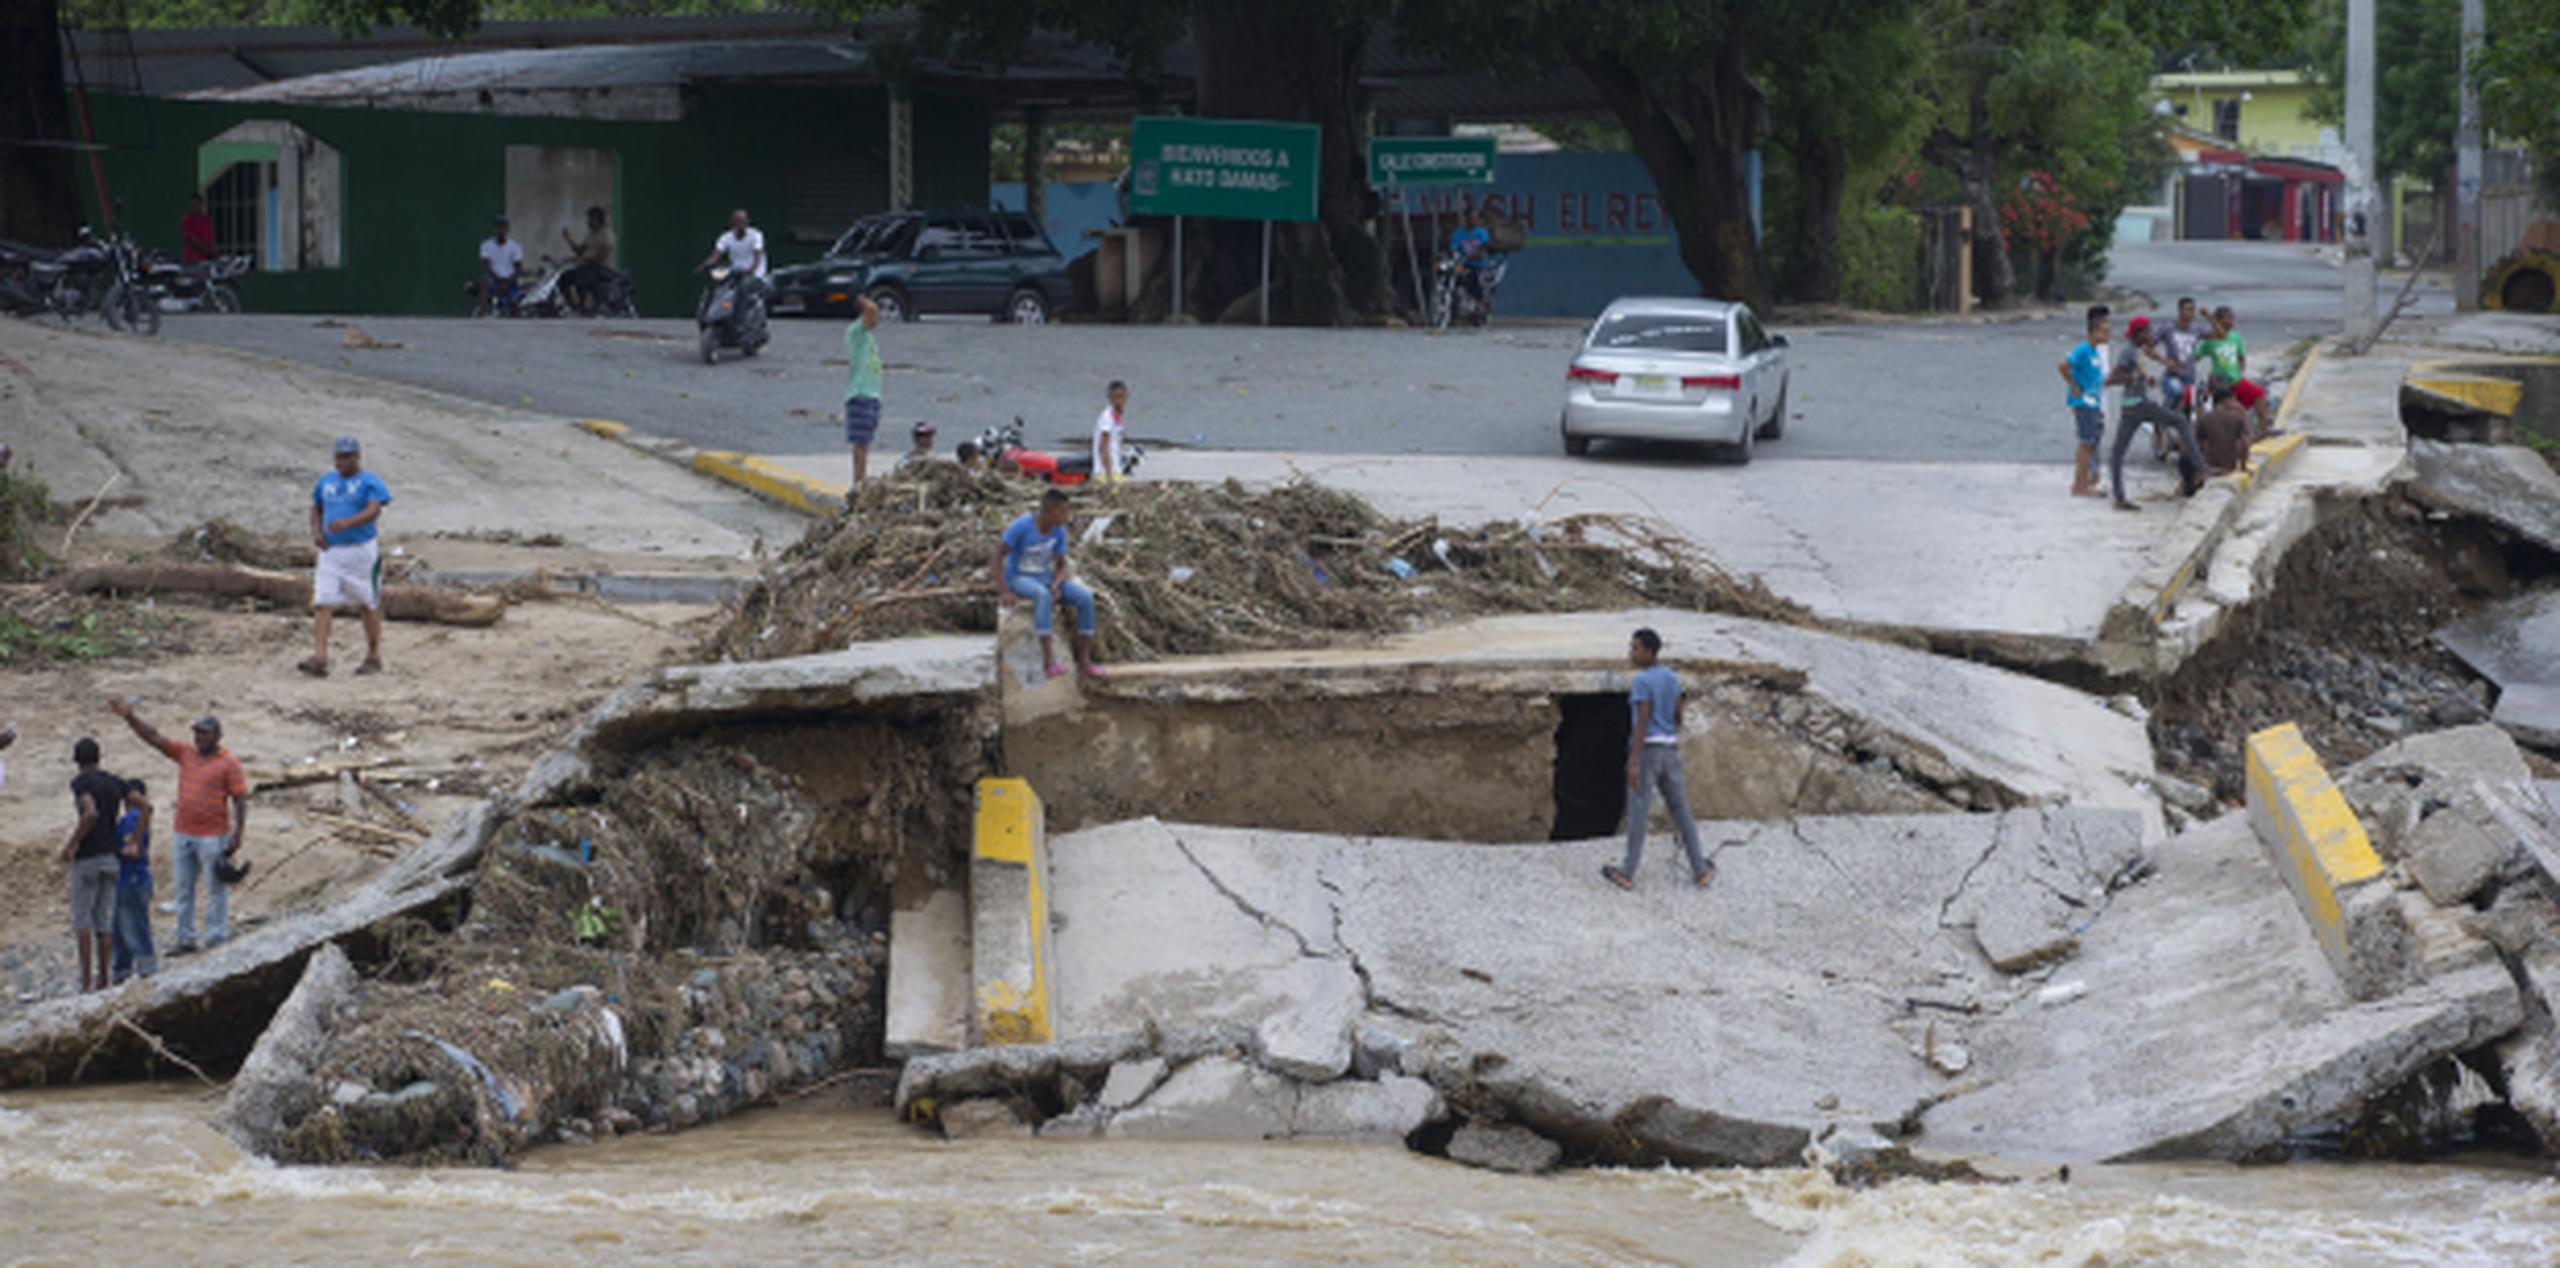 Muchas vías y carreteras han sido afectadas por las intensas lluvias, como ocurrió con este puente en San Cristóbal que quedó destruido. (EFE/ Orlando Barría)
